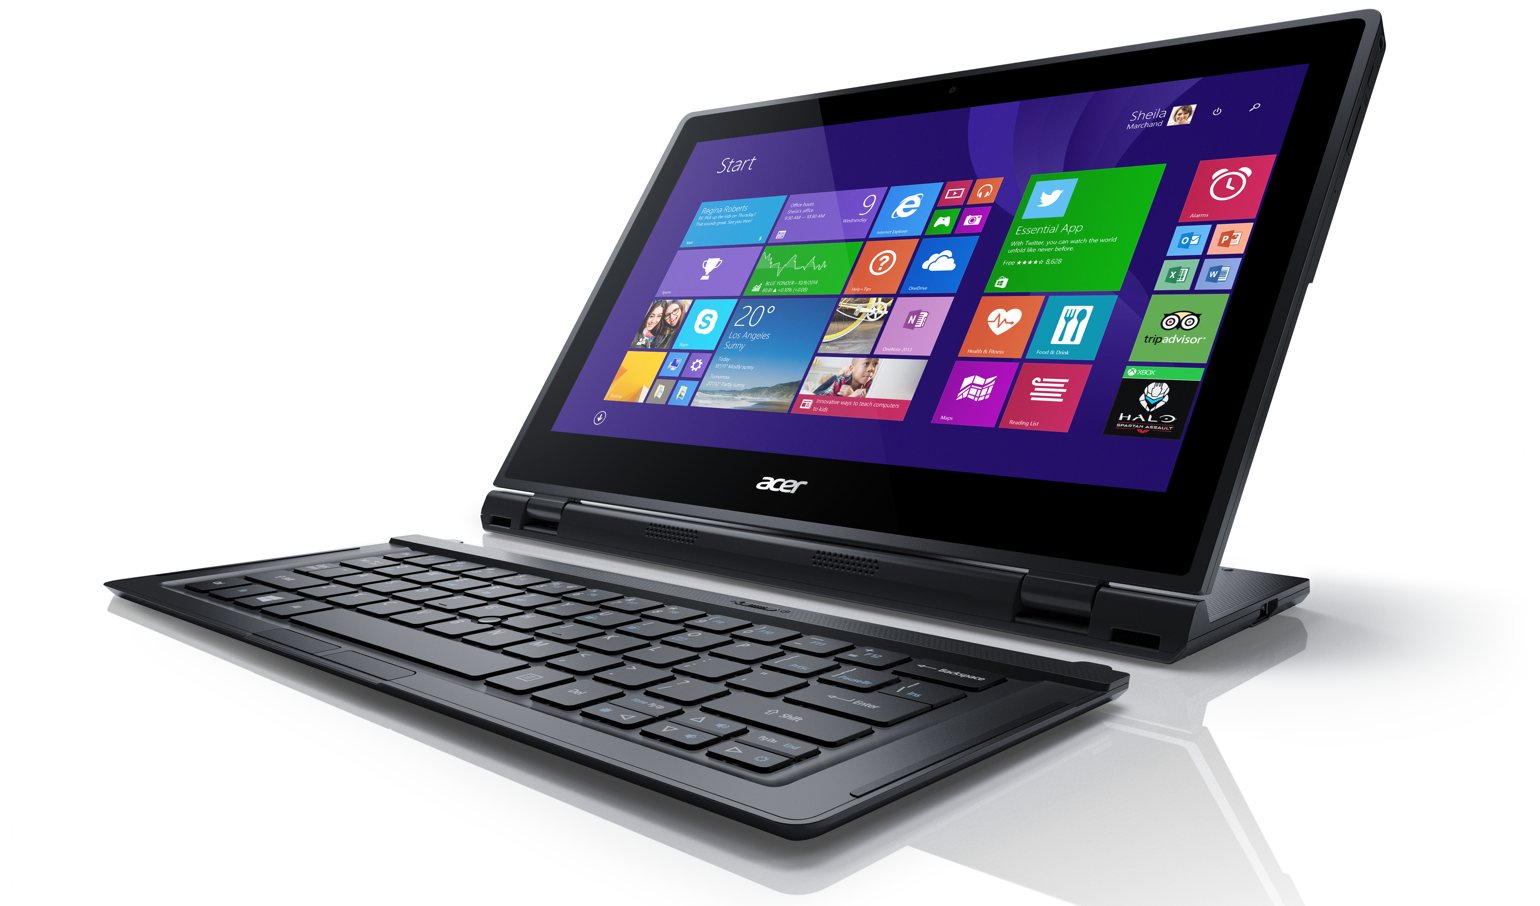 Acer Aspire Switch 12 là máy tính bảng lai laptop 5 chế độ sử dụng mới nhất của Acer